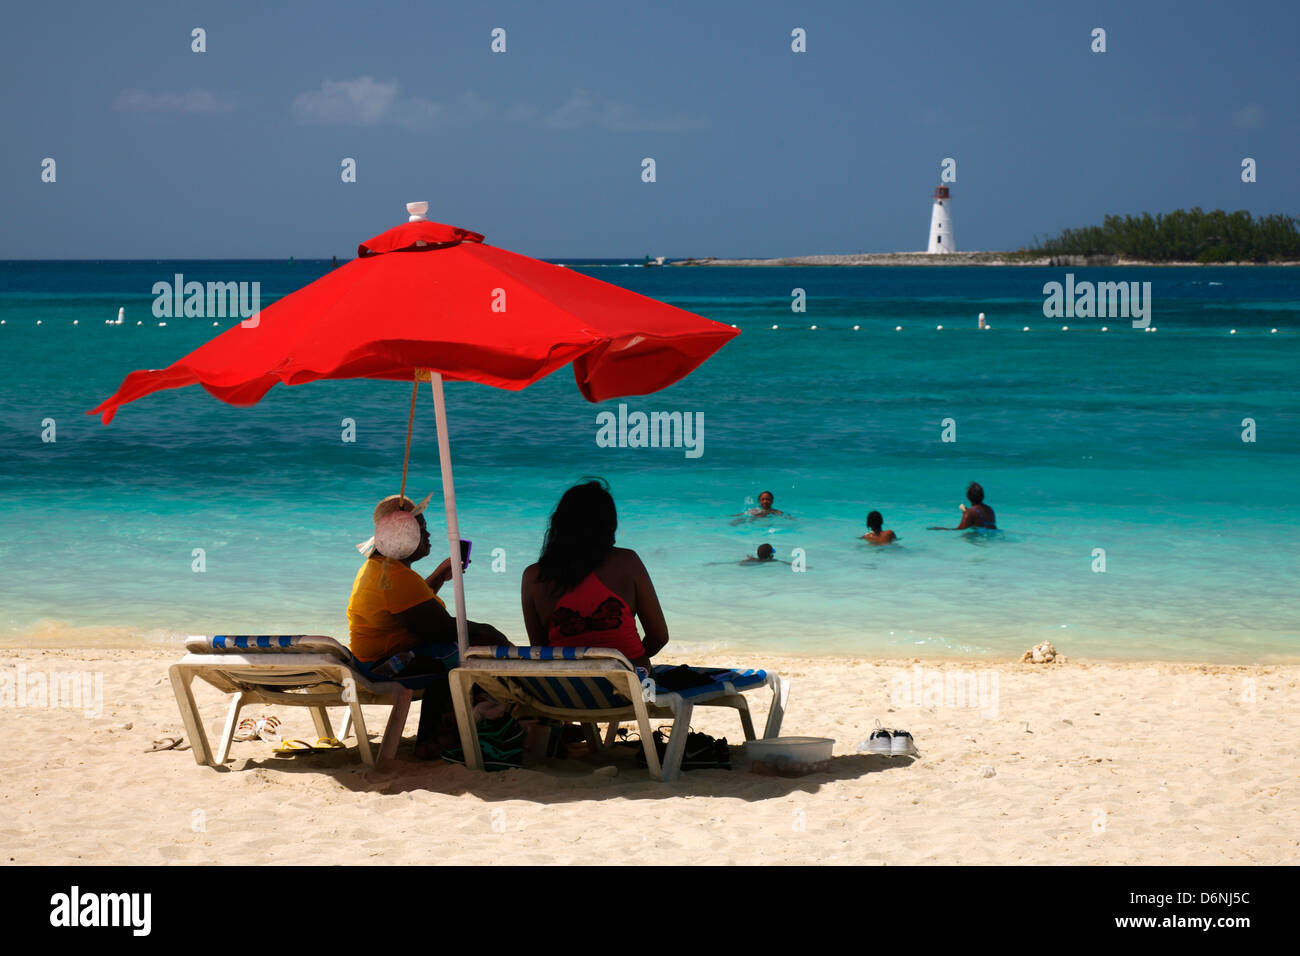 Junkanoo beach on Nassau Bahamas Stock Photo